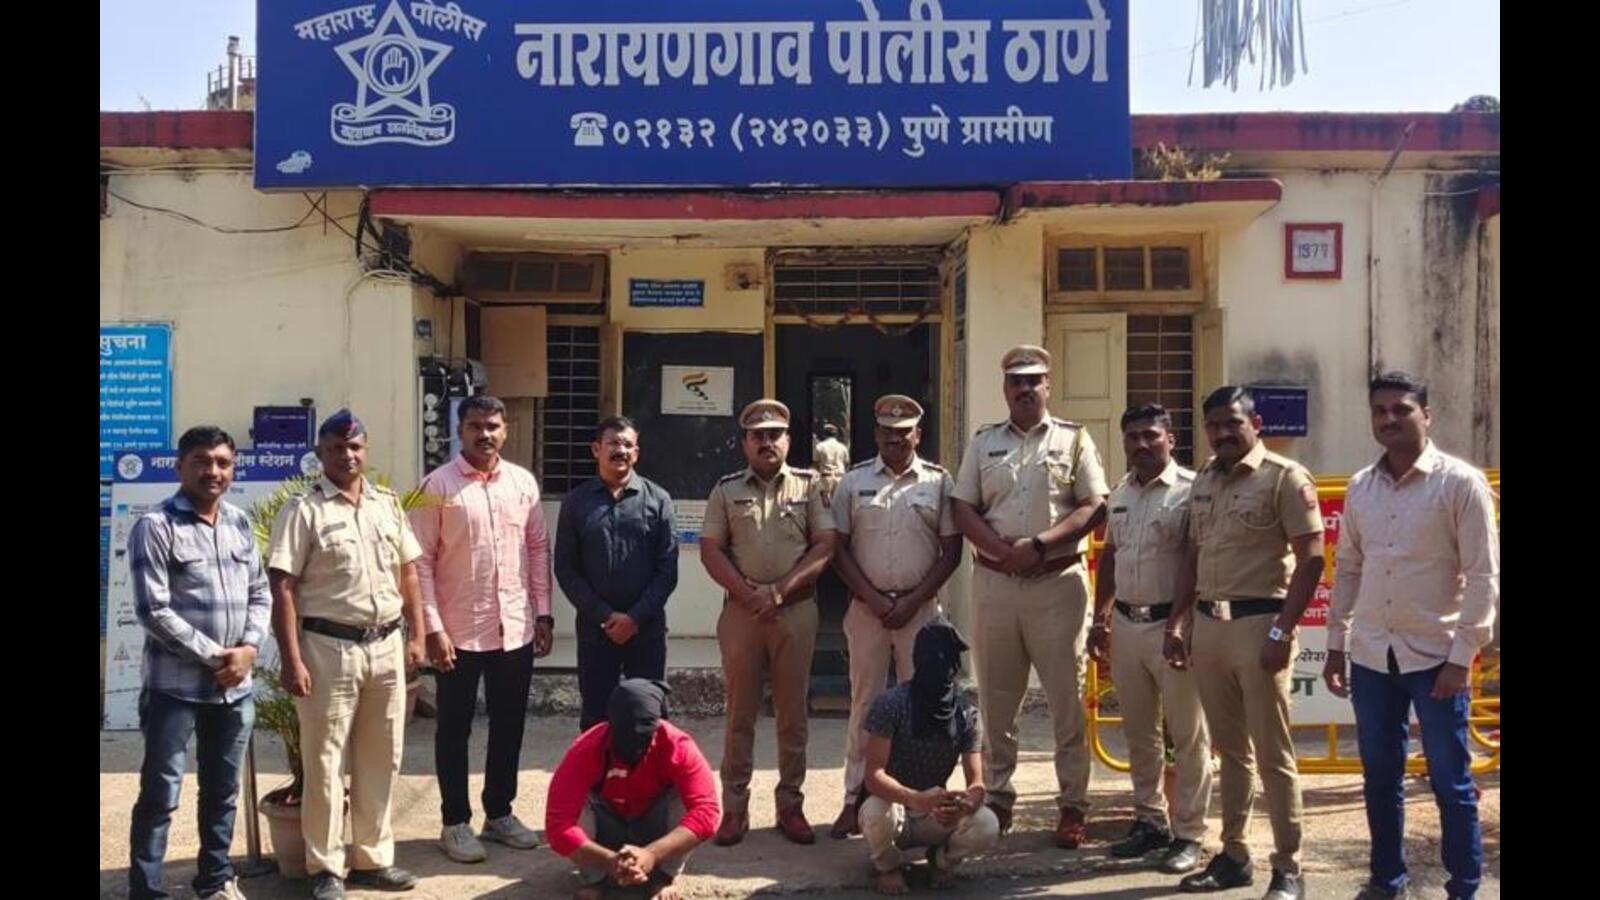 पुणे: सफेद दुपट्टा हत्याकांड की गुत्थी सुलझाने में पुलिस की मदद करता है, दो गिरफ्तार